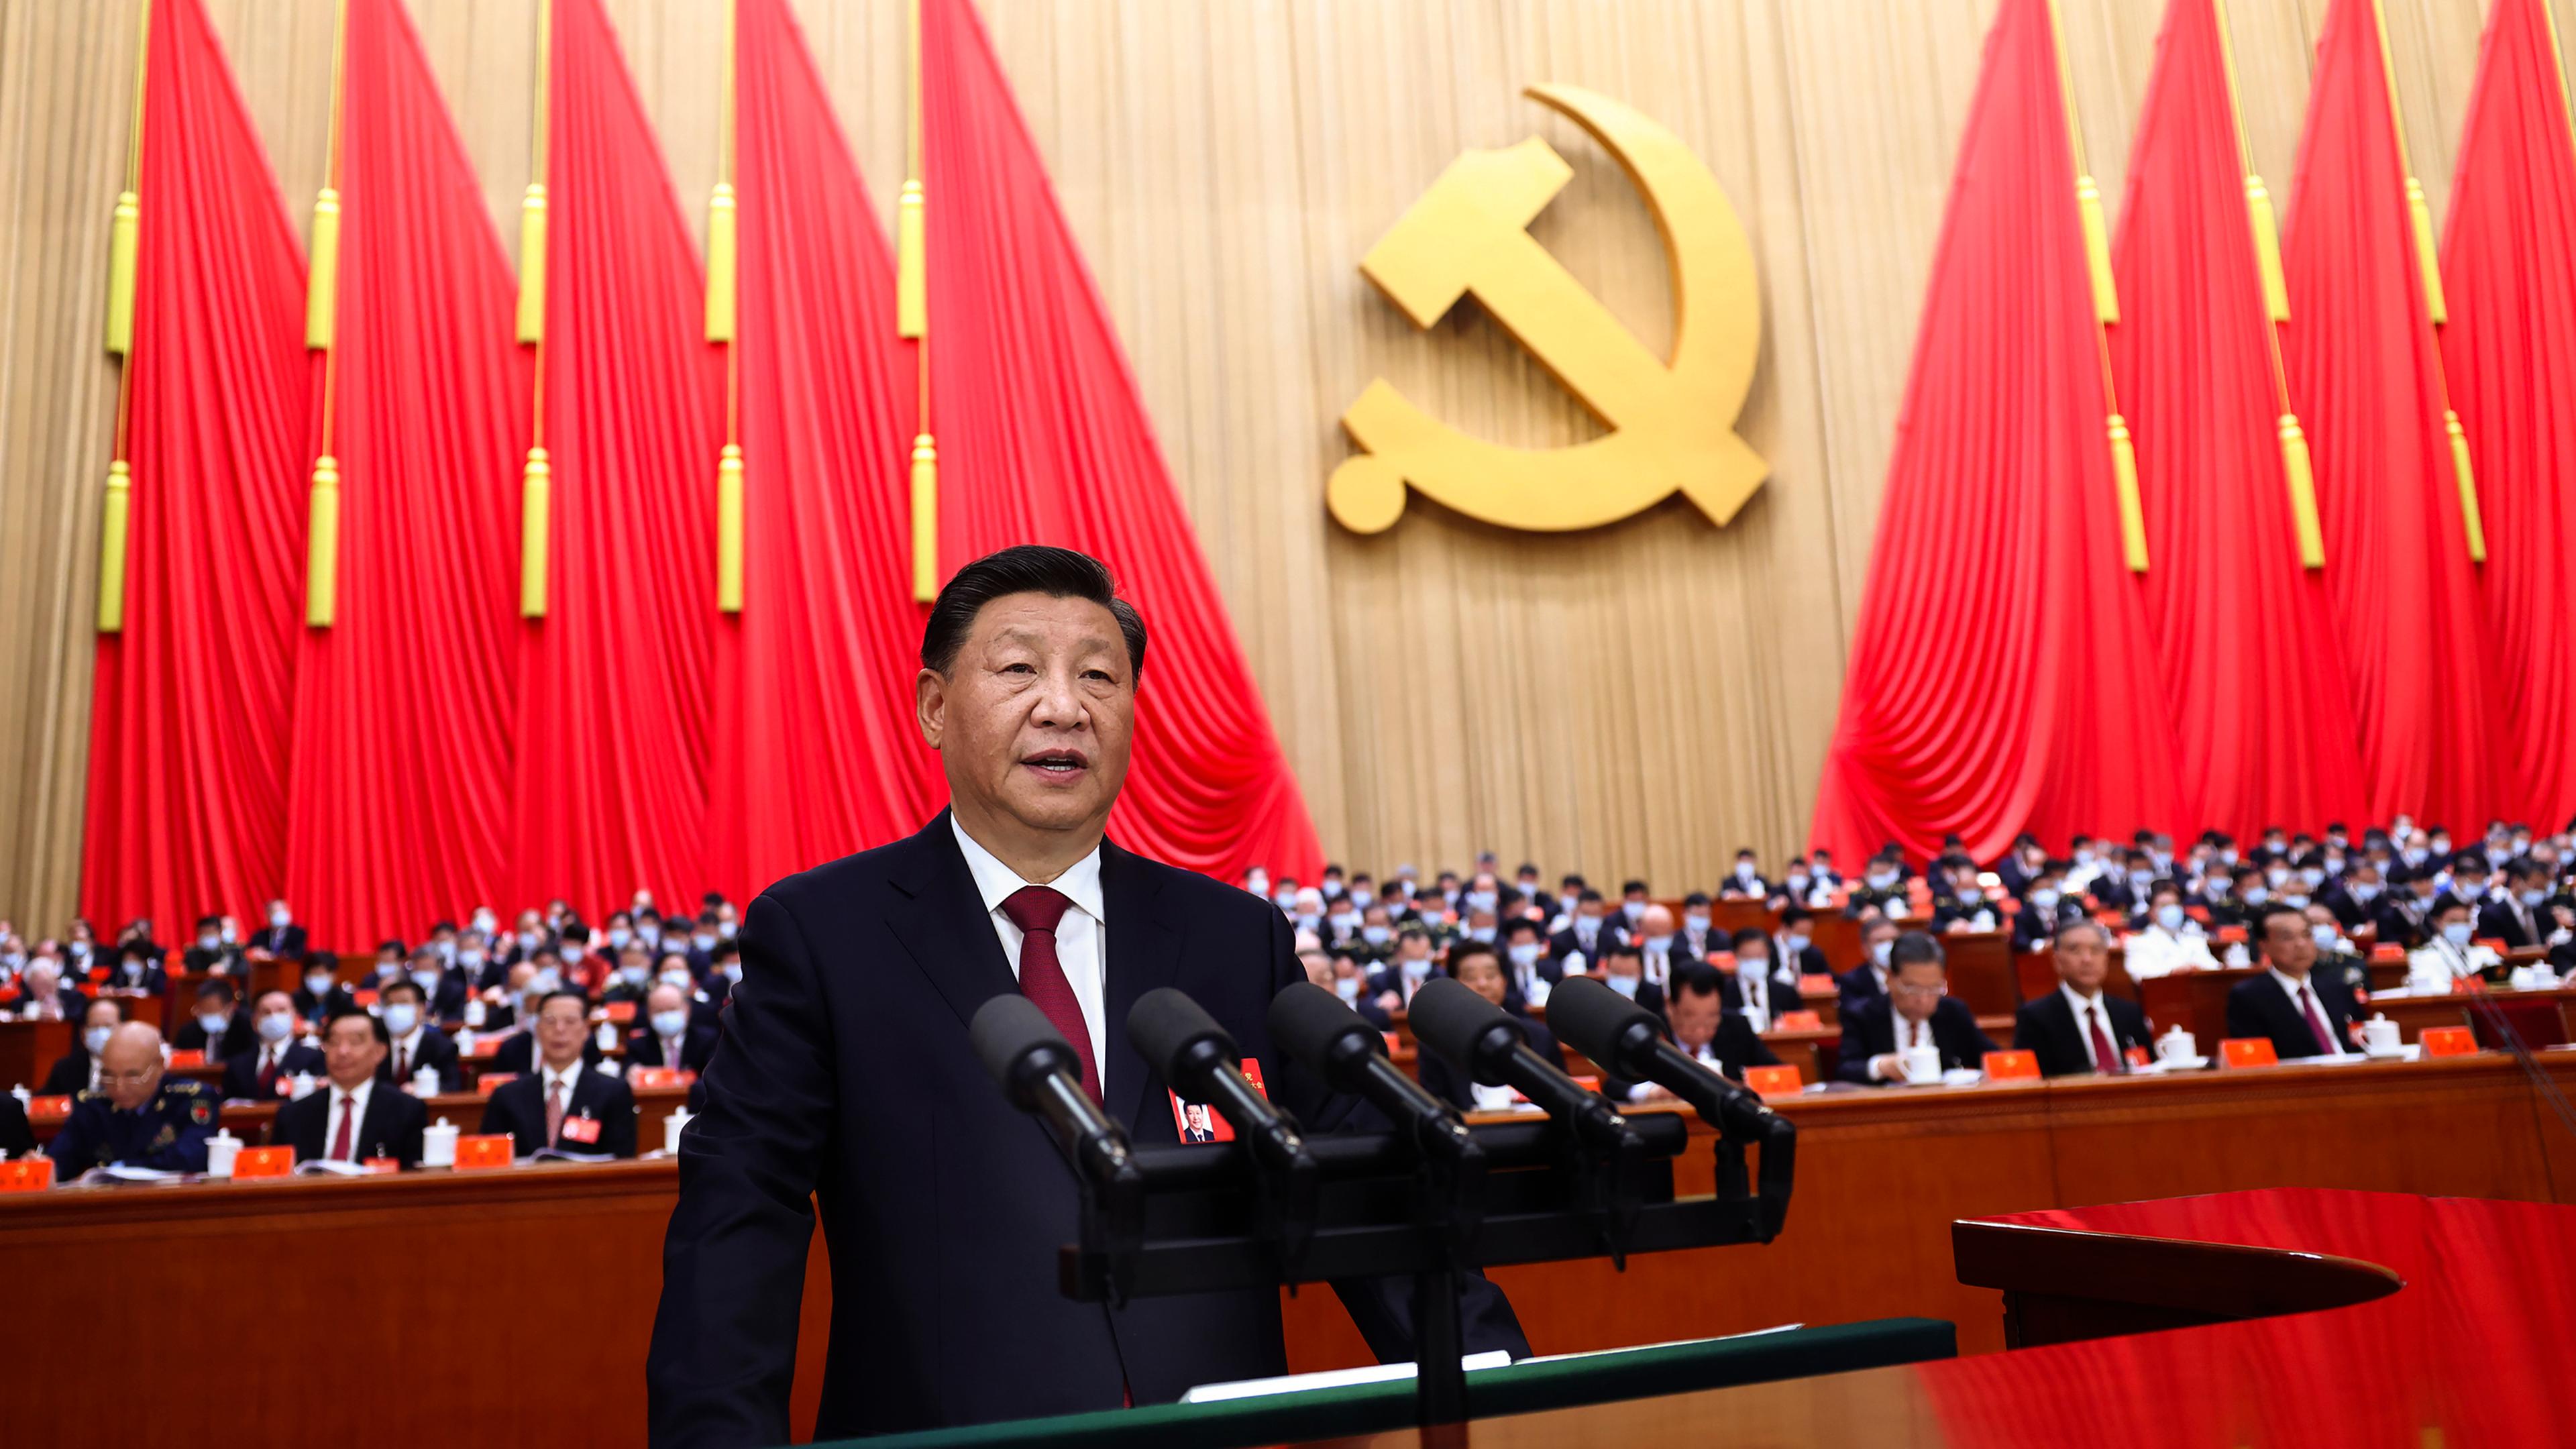 Der chinesische Präsident Xi Jinping eröffnet den 20. Nationalen Kongress der Kommunistischen Partei